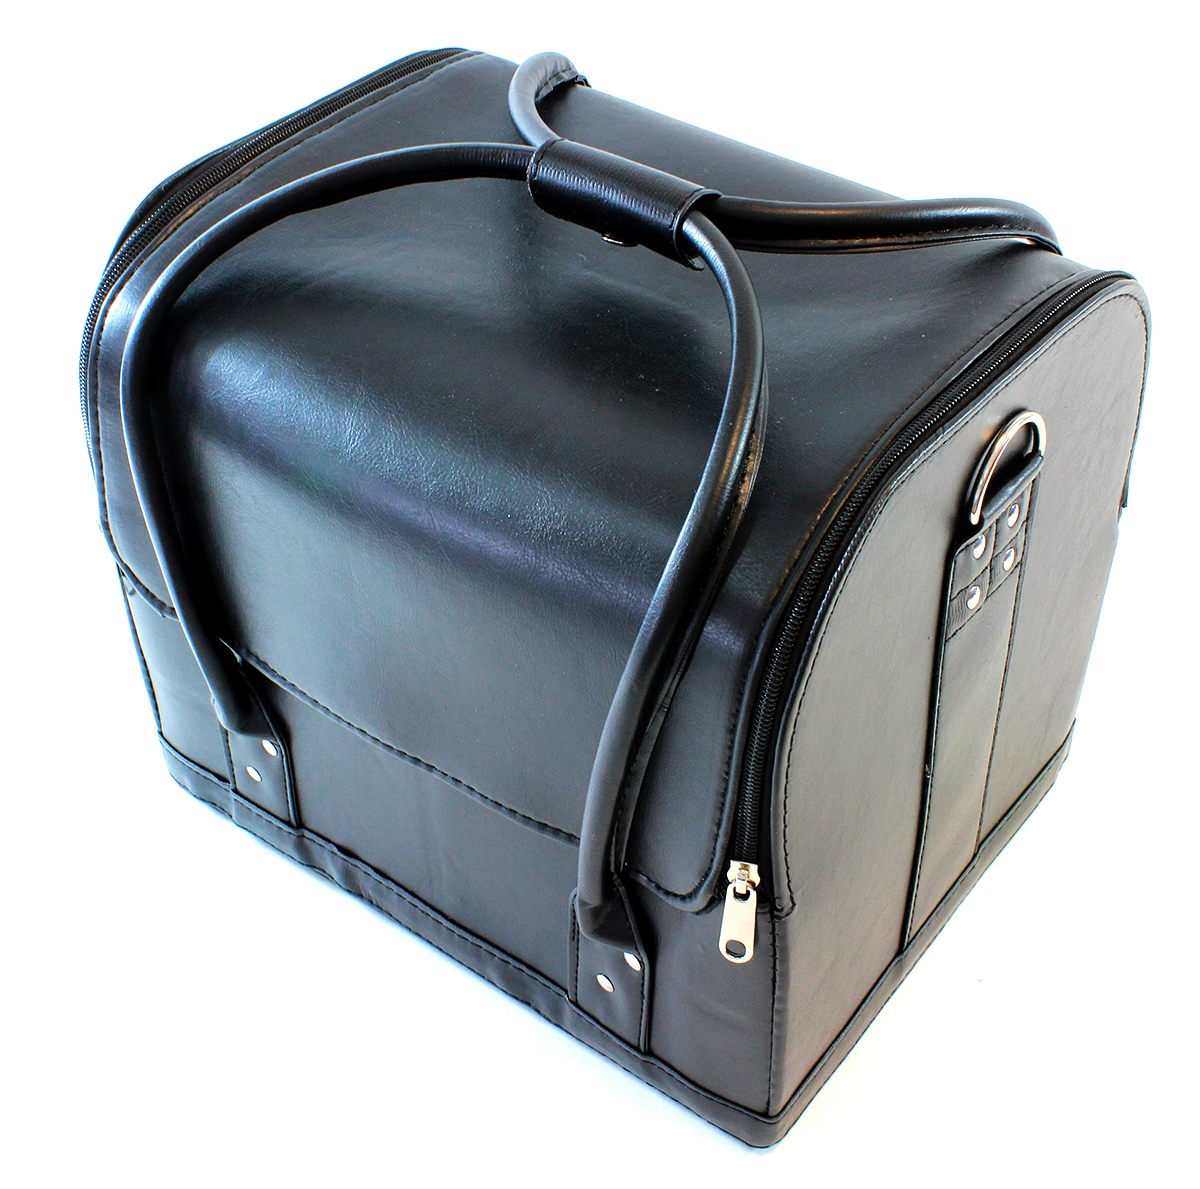 APT Kosmetický kufřík 26x24x30cm - černý, CA18